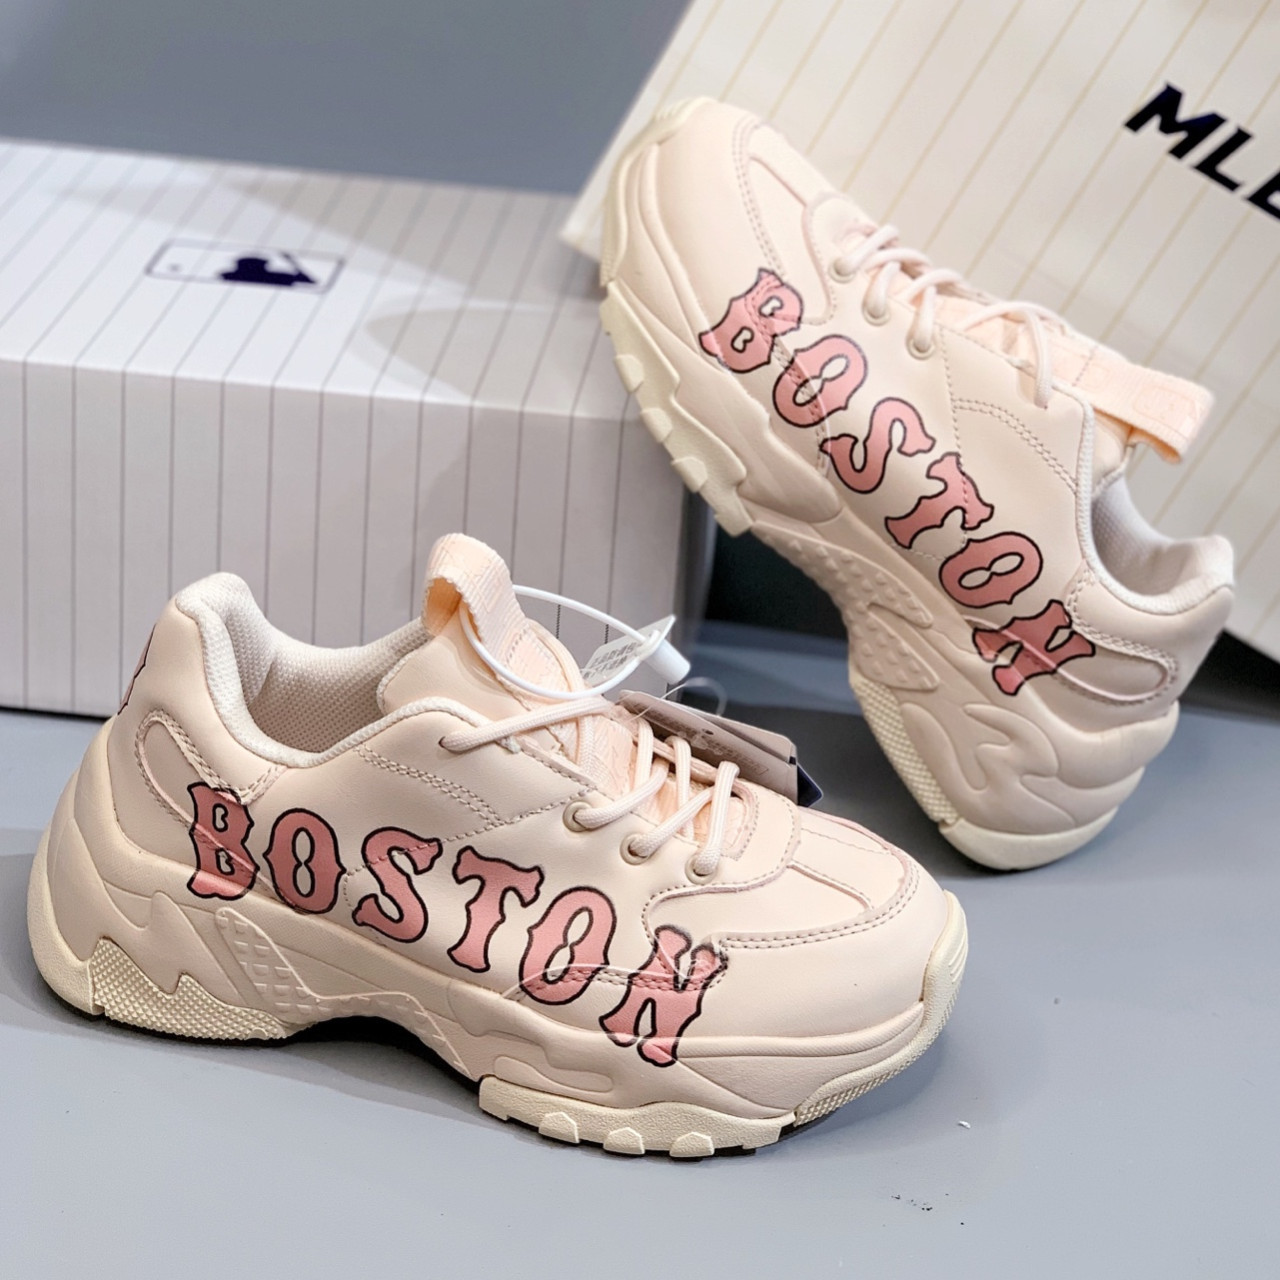 1 CHUYÊN SỈ giày sneaker MLB Boston Rep giá rẻ tại tphcm